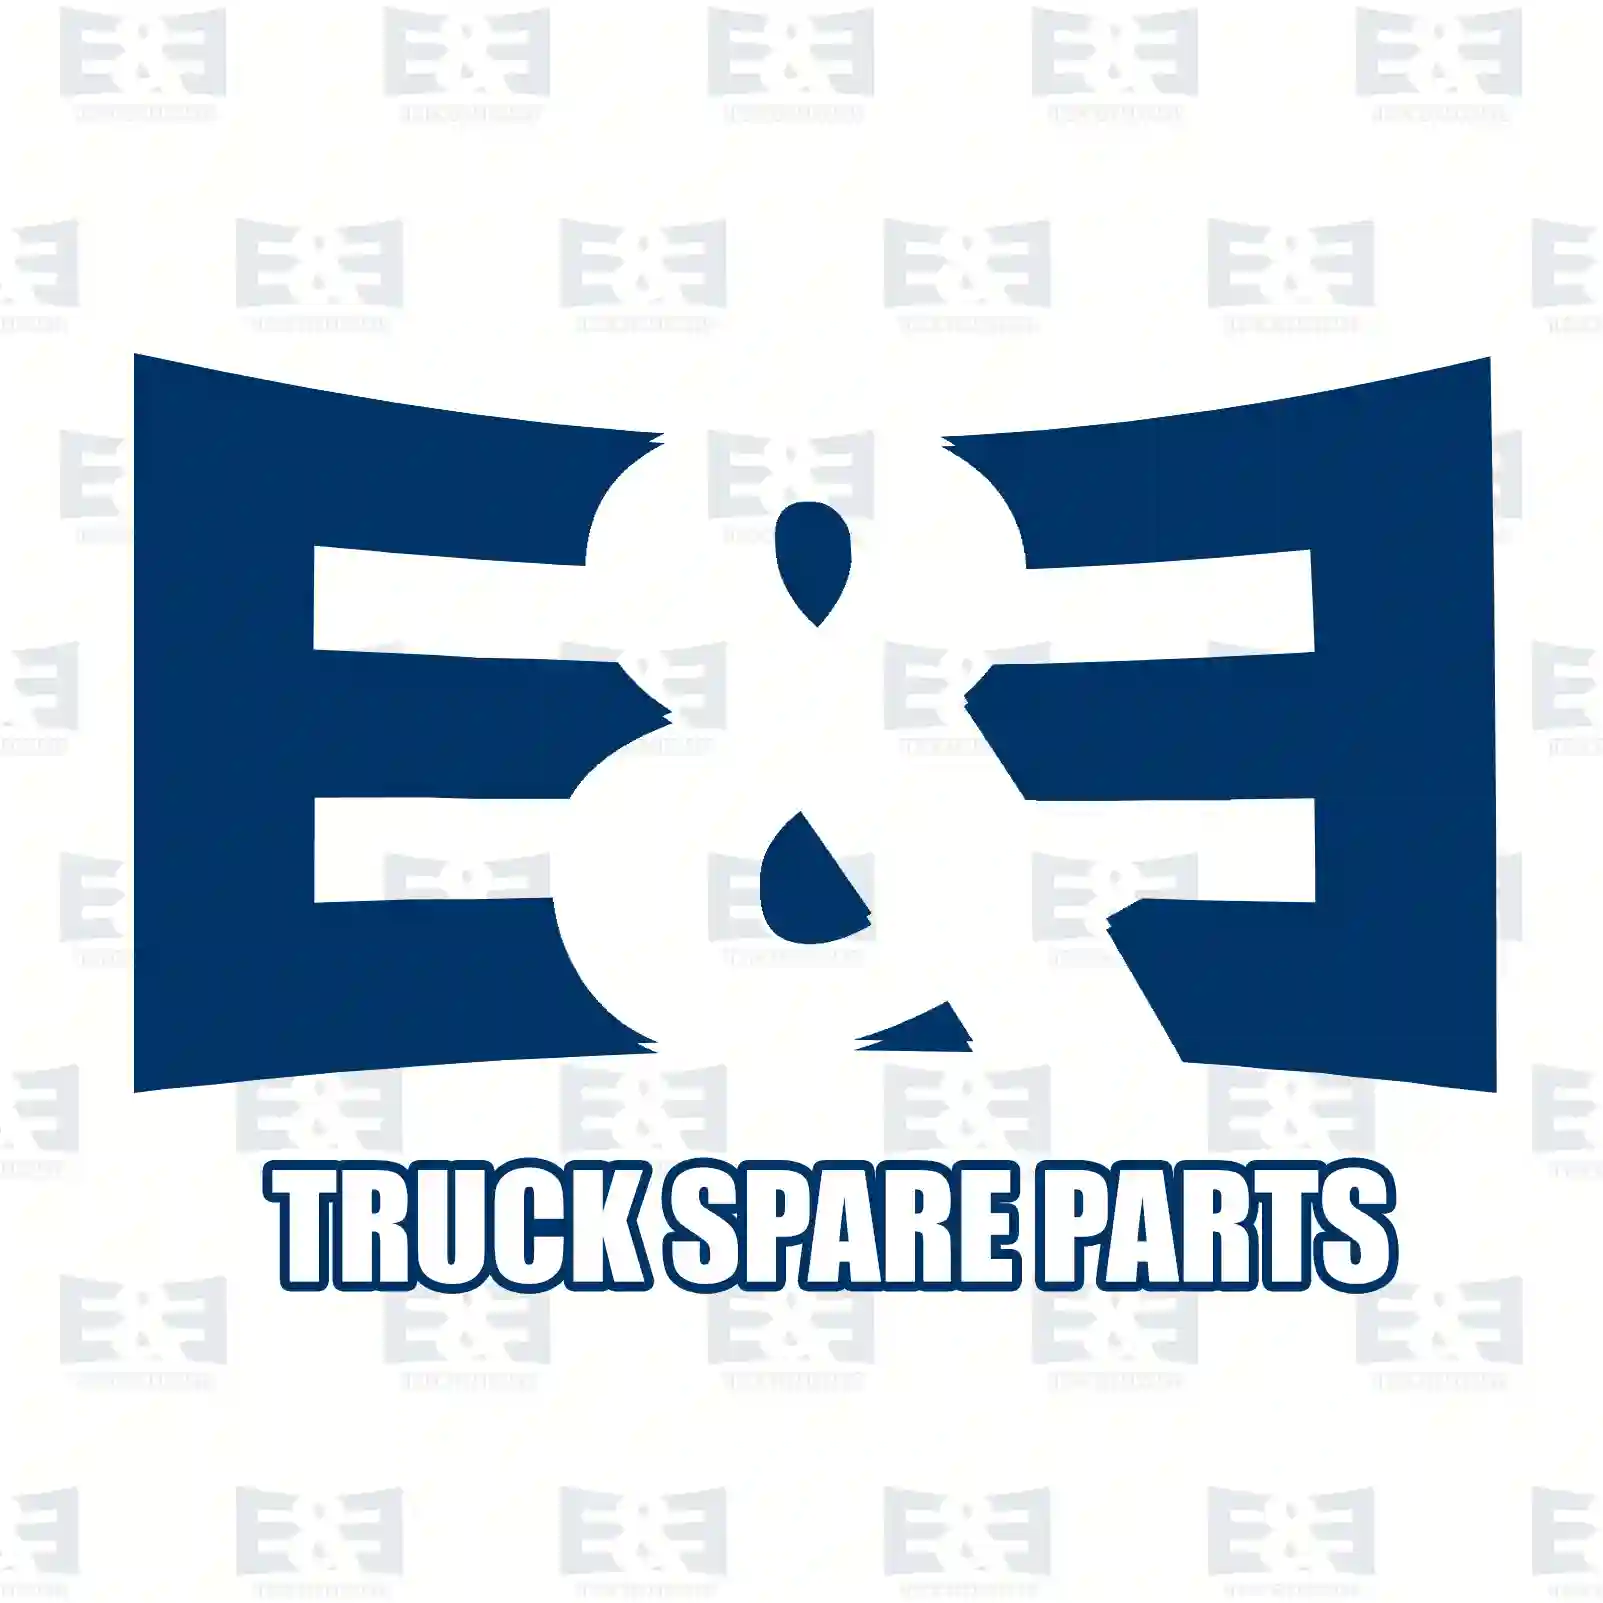 O-ring, 2E2285286, 1328242, 1361454, 804667, ZG01854-0008 ||  2E2285286 E&E Truck Spare Parts | Truck Spare Parts, Auotomotive Spare Parts O-ring, 2E2285286, 1328242, 1361454, 804667, ZG01854-0008 ||  2E2285286 E&E Truck Spare Parts | Truck Spare Parts, Auotomotive Spare Parts